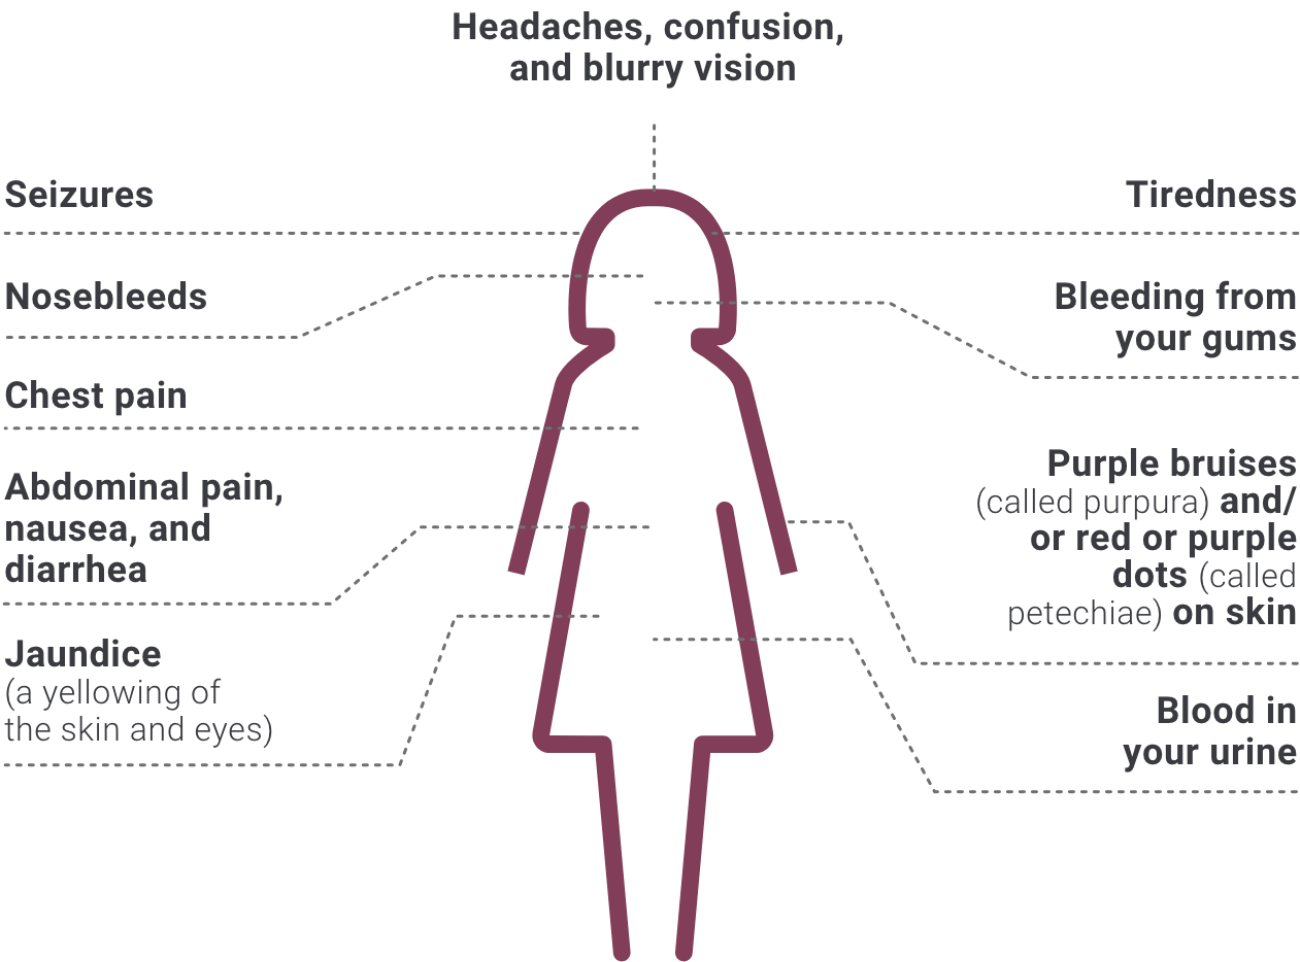 symptoms of petechiae